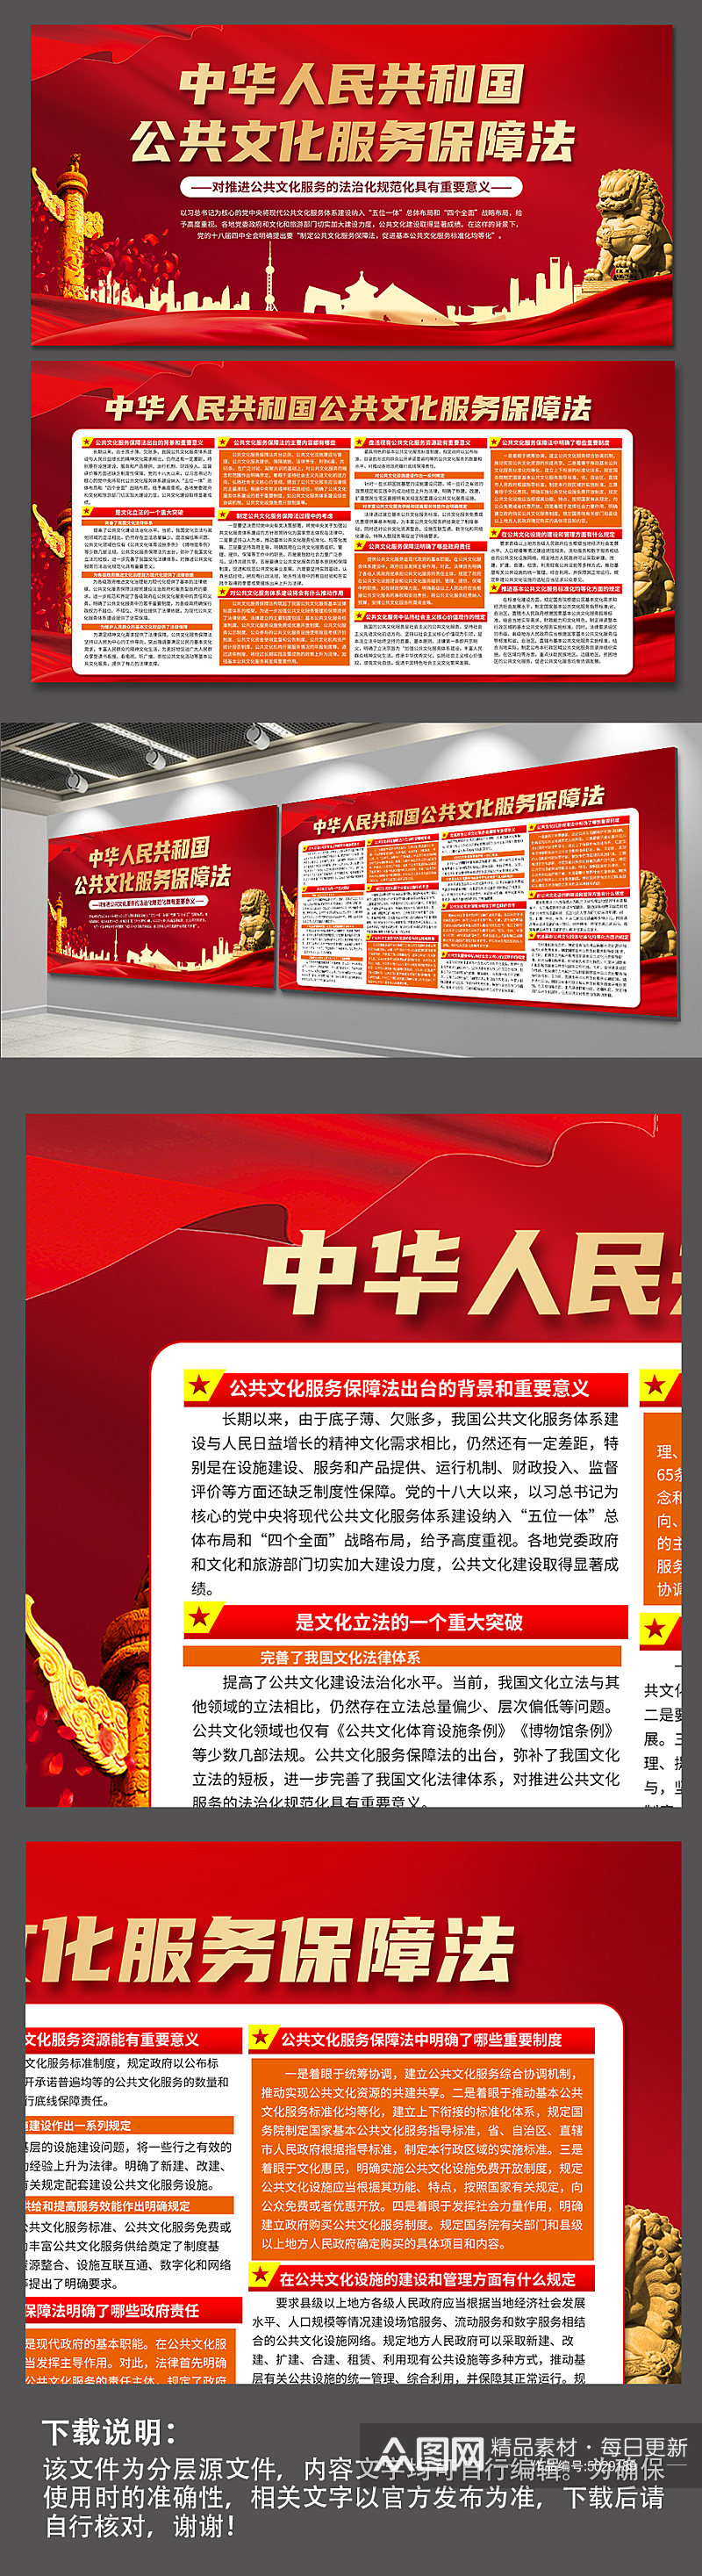 红色中华人民共和国公共文化服务保障法展板素材